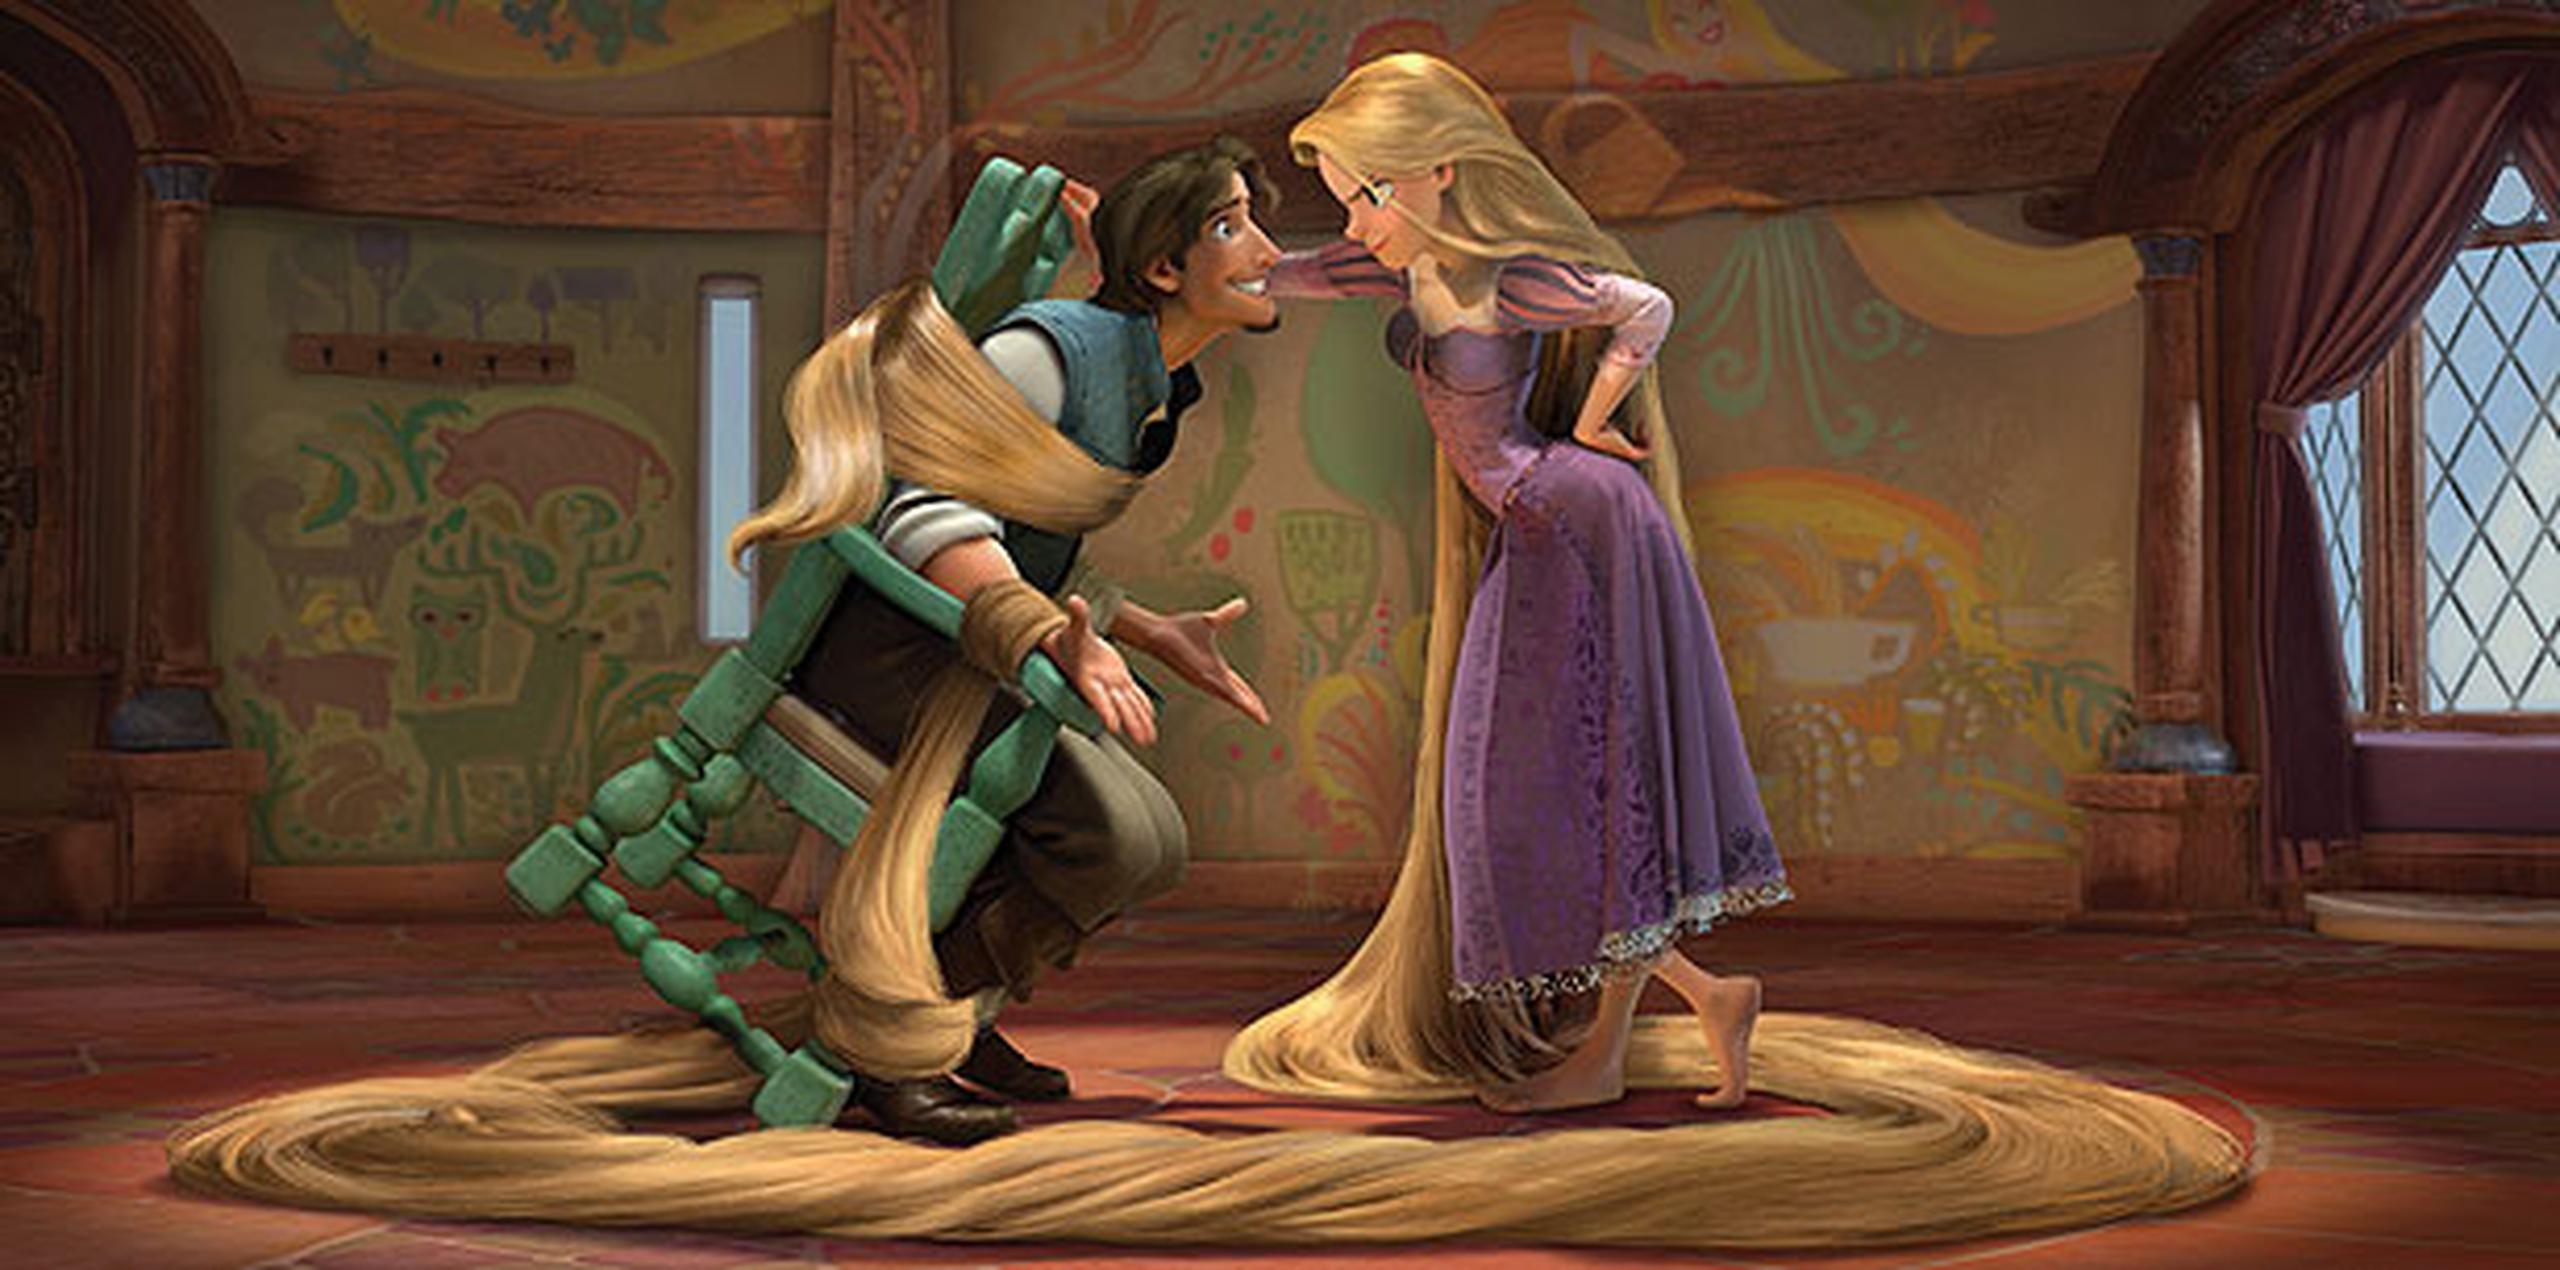 Flynn Rider y Rapunzel son algunos de los personajes con los que juegan mis hijas. (Archivo)